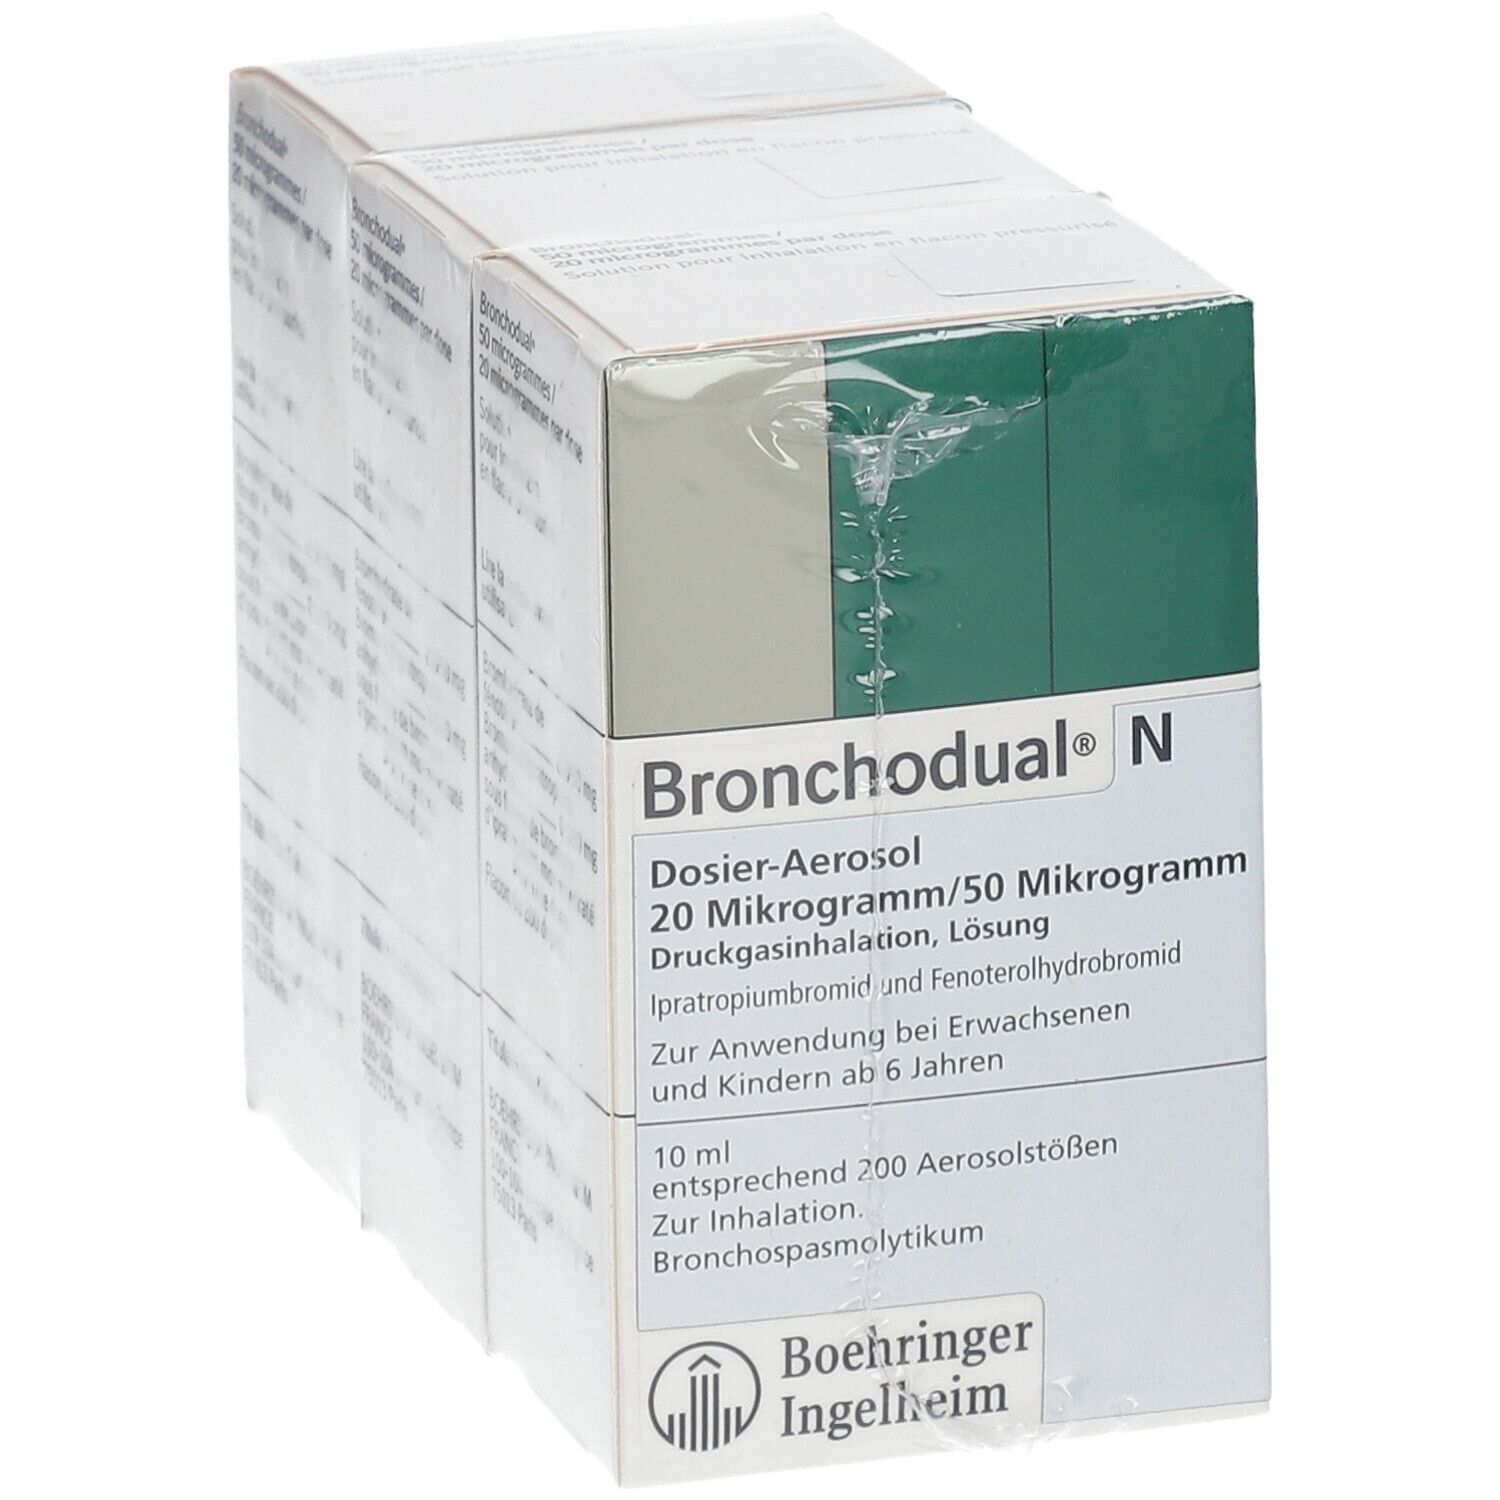 Bronchodual N Dosieraerosol 20 µg/50 µg